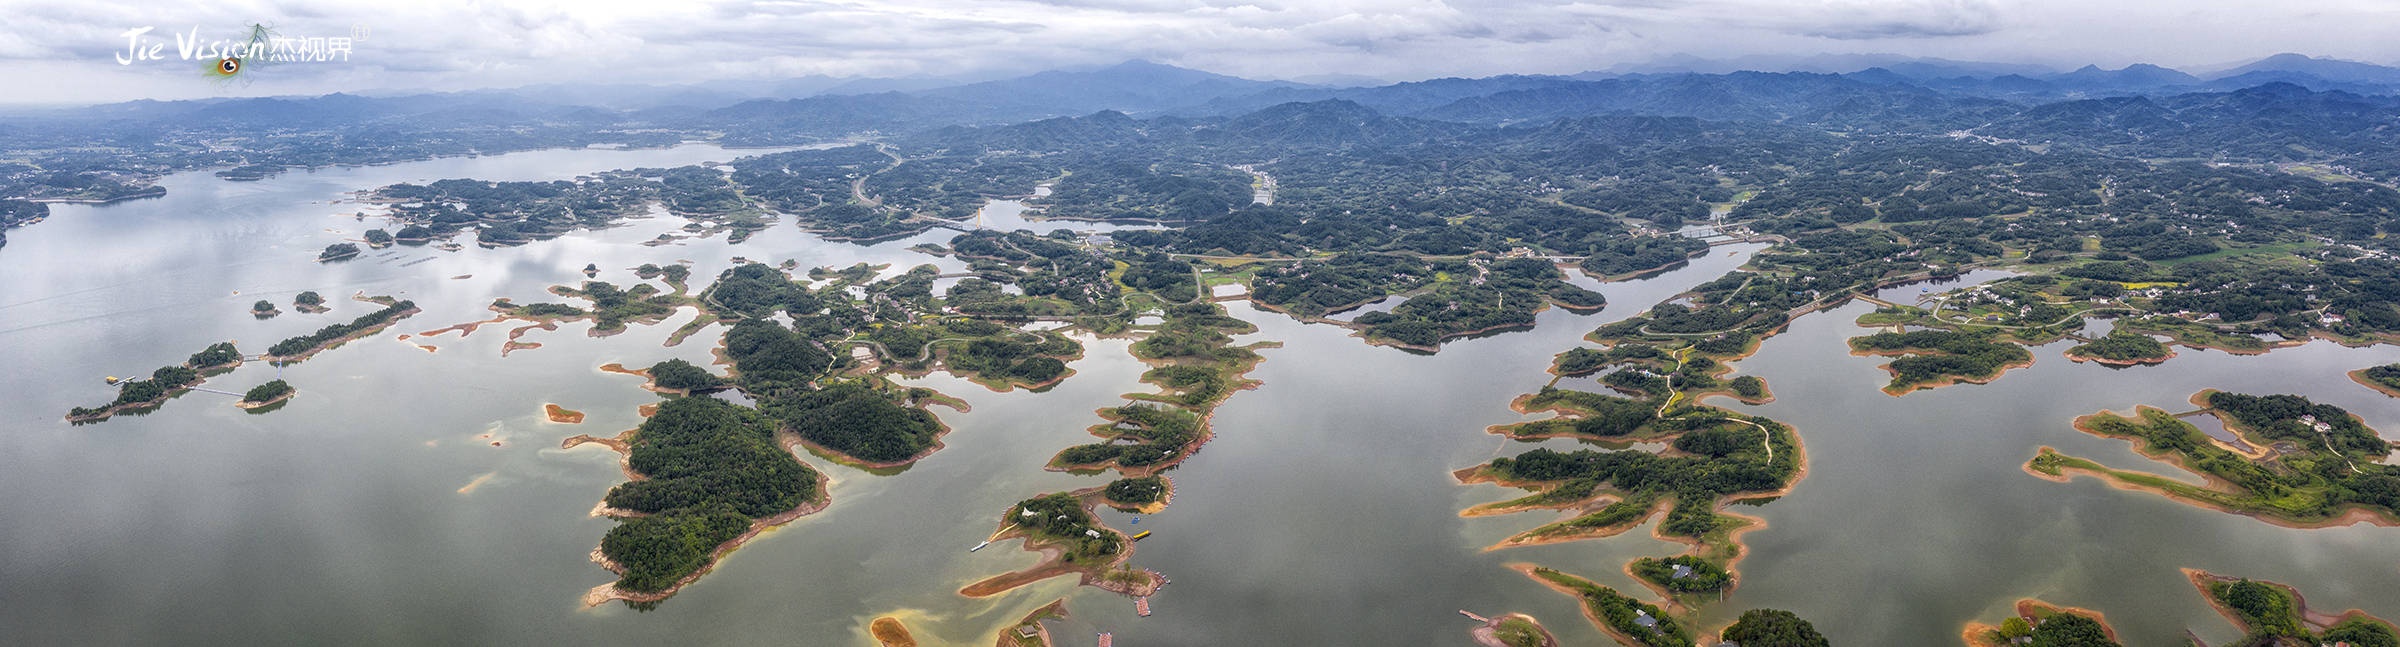 60年前的壮举 中国用30年建8万座水库 走进万佛湖聊往事